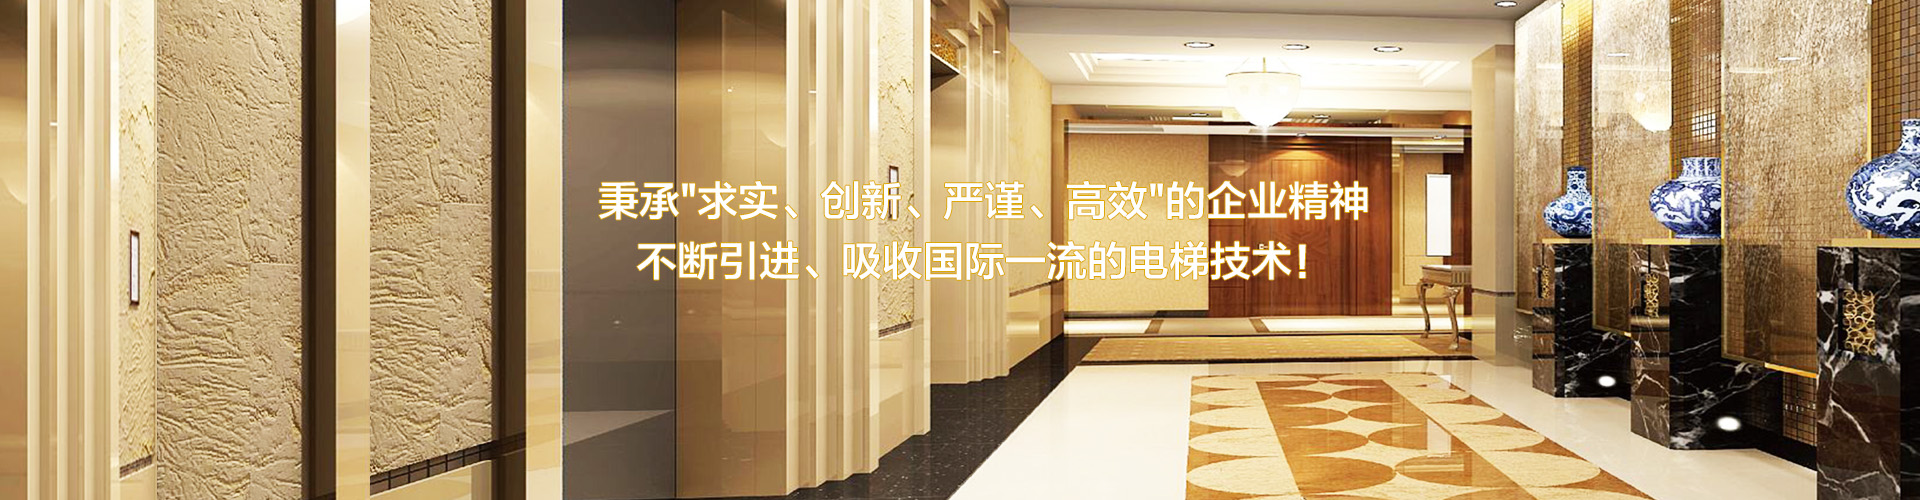 广州电梯设备采购,广州电梯采购商,广州采购电梯